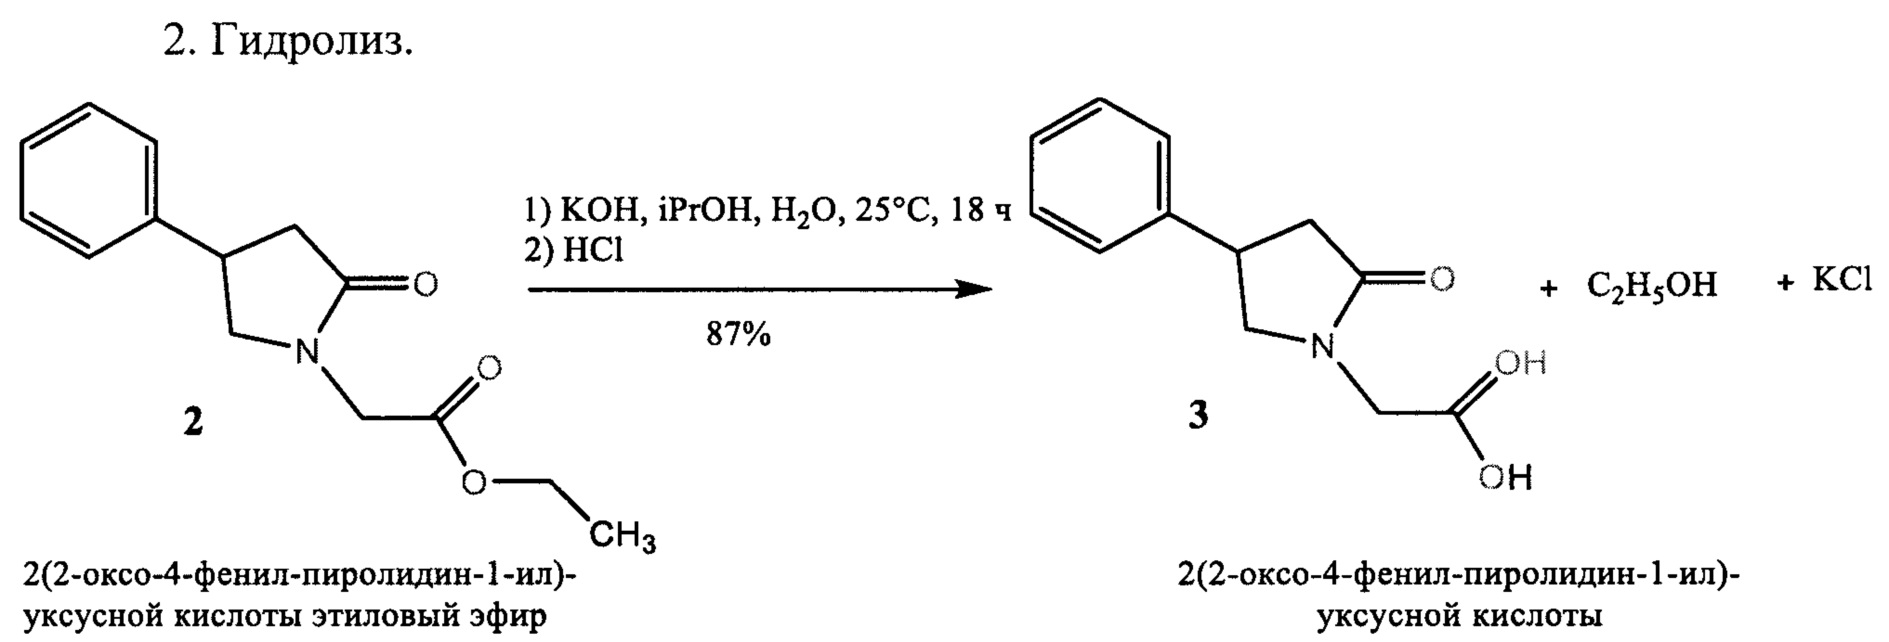 Гидролиз этилового эфира в присутствии кислоты. 2-(2-Оксо-4фенилпирролидин-1-ил)ацетамид. Фенил этиловый эфир получают. Гидролиз этилового эфира уксусной кислоты. Этиловый эфир 2-оксо-4-фенилбутеновой кислоты.